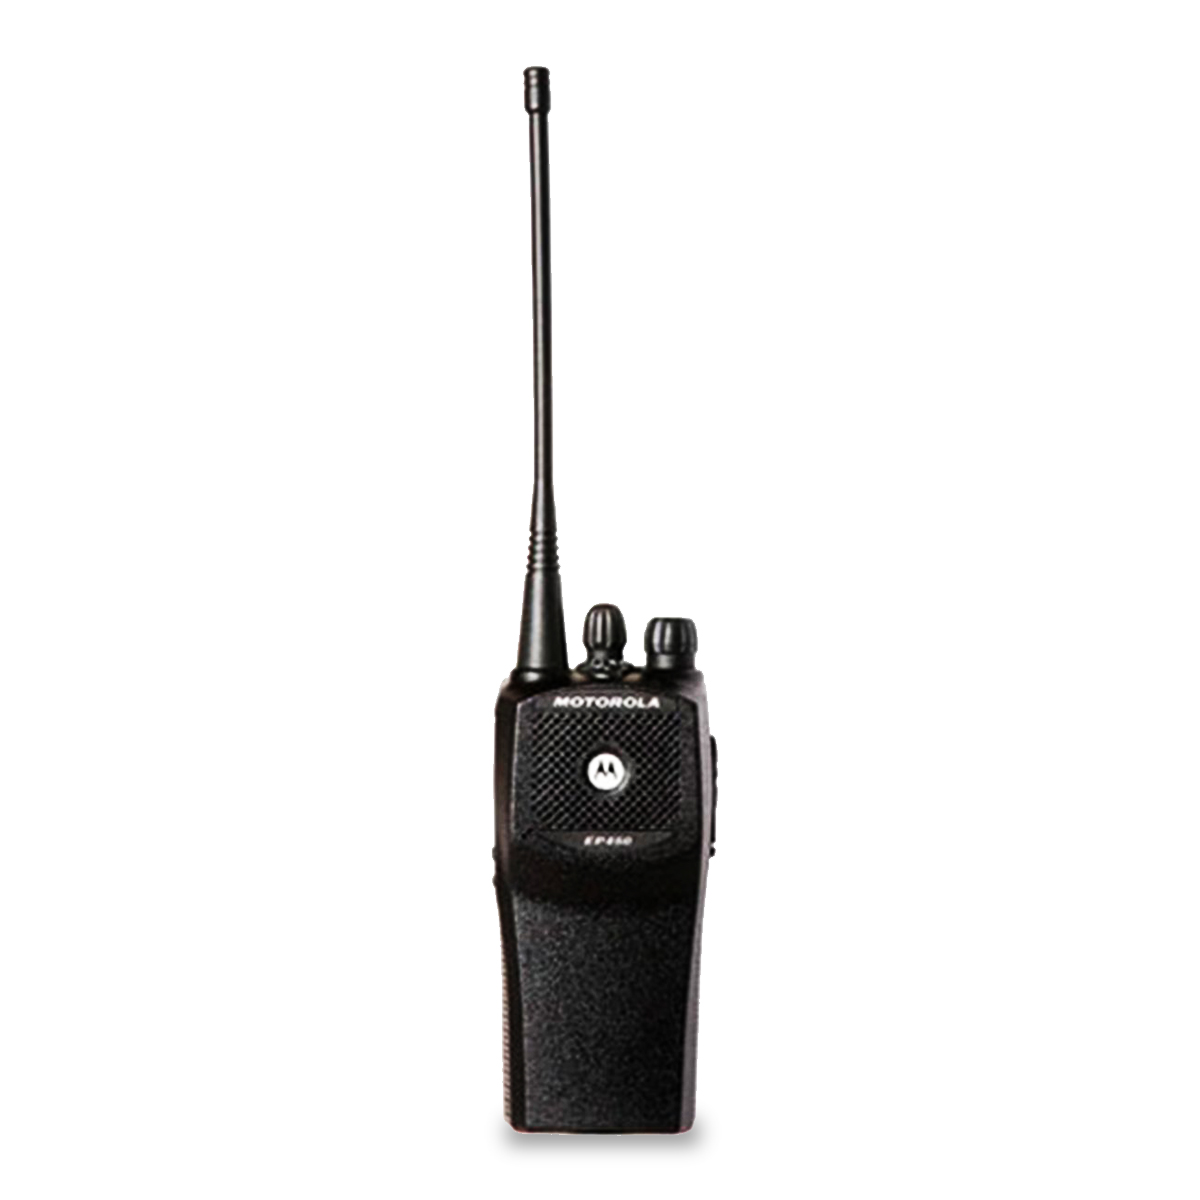 Doncella por ciento prioridad Radio Motorola EP450 Analógico LAH65JDC9AA2N VHF 136-162 MHz | Telser de  Venezuela S.A